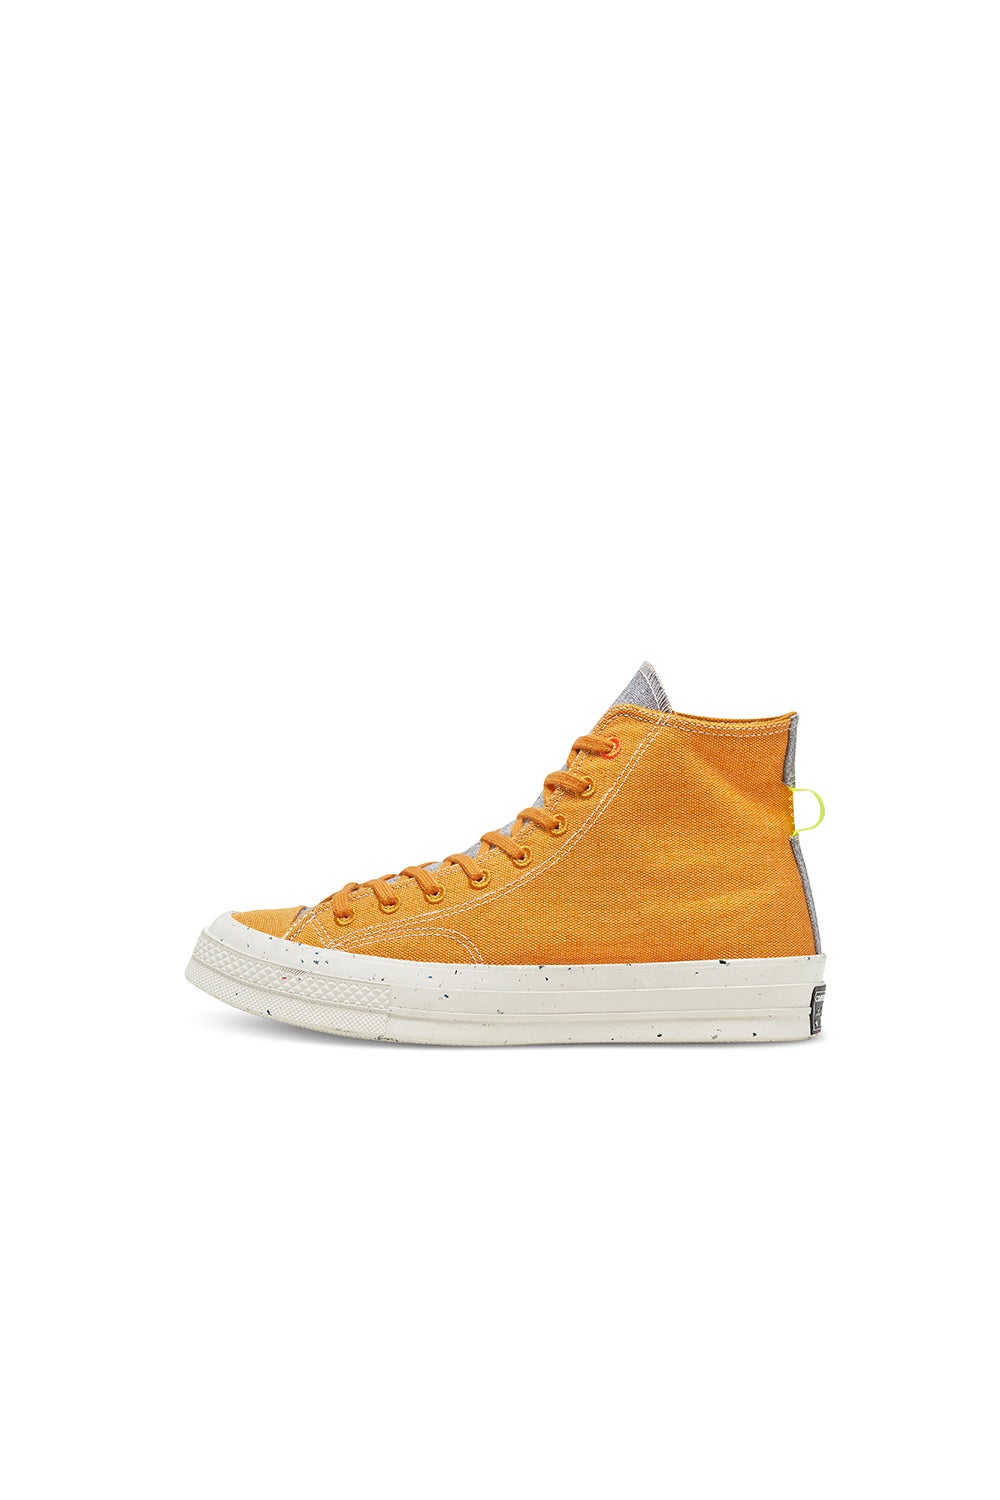 Converse Chuck 70 Renew High Top Saffron Yellow